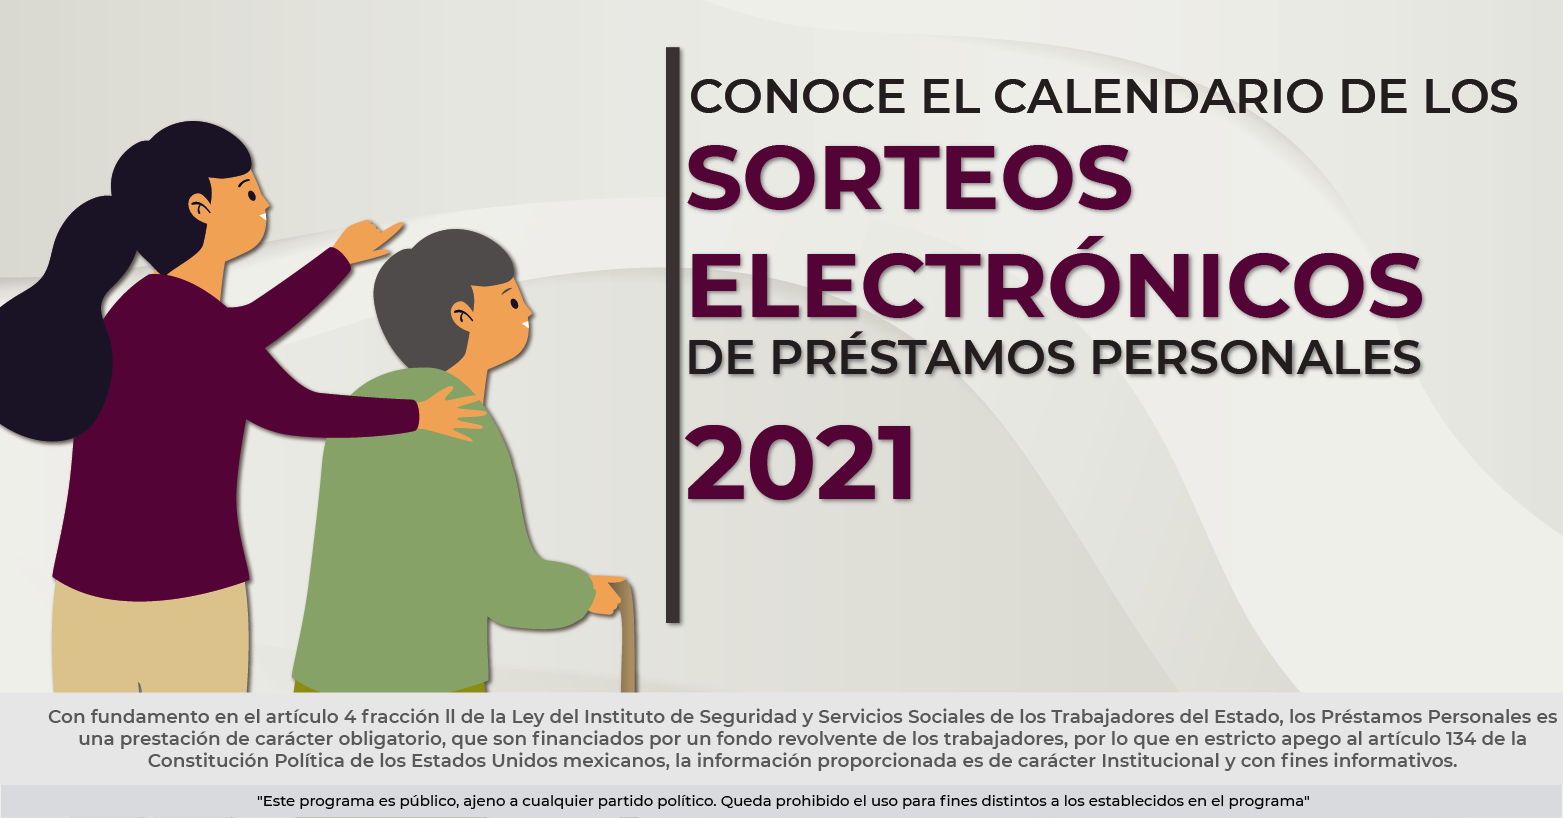 Calendario de Sorteos Electrónicos de Préstamos Personales 2021